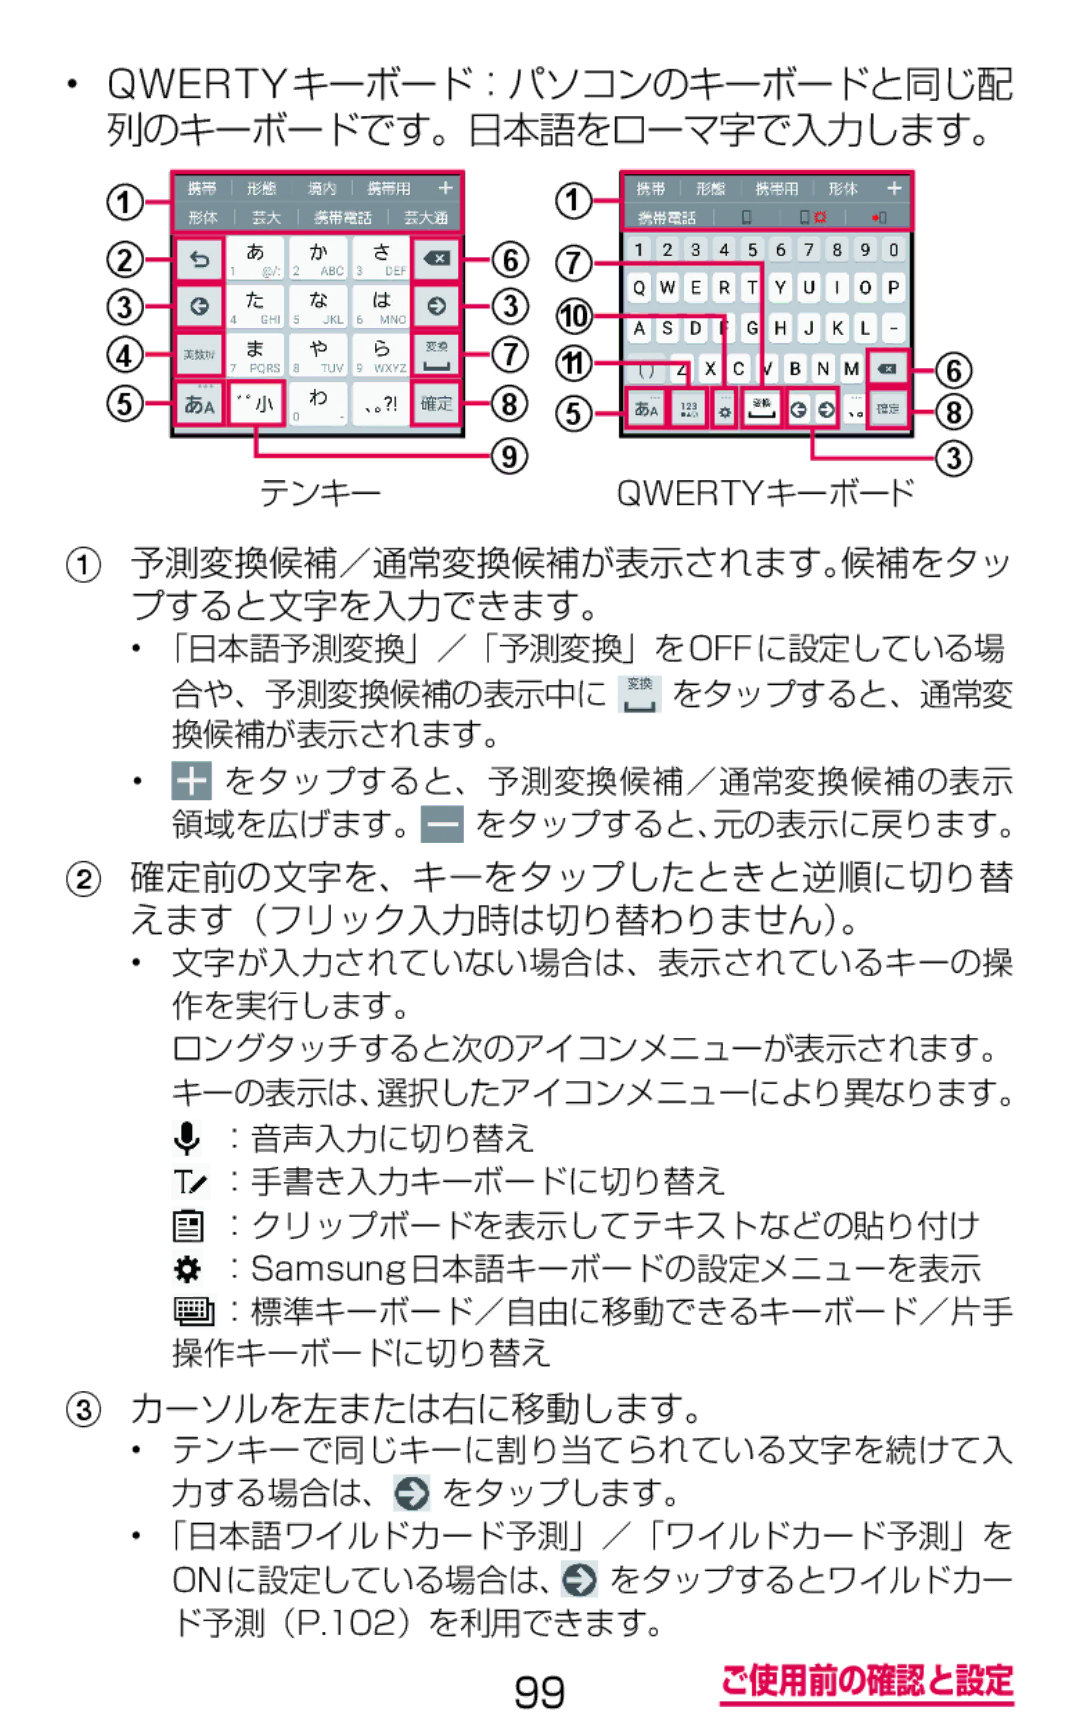 Samsung SM-G900DZKEDCM Qwertyキーボード：パソコンのキーボードと同じ配 列のキーボードです。日本語をローマ字で入力します。, 予測変換候補／通常変換候補が表示されます。候補をタッ プすると文字を入力できます。 